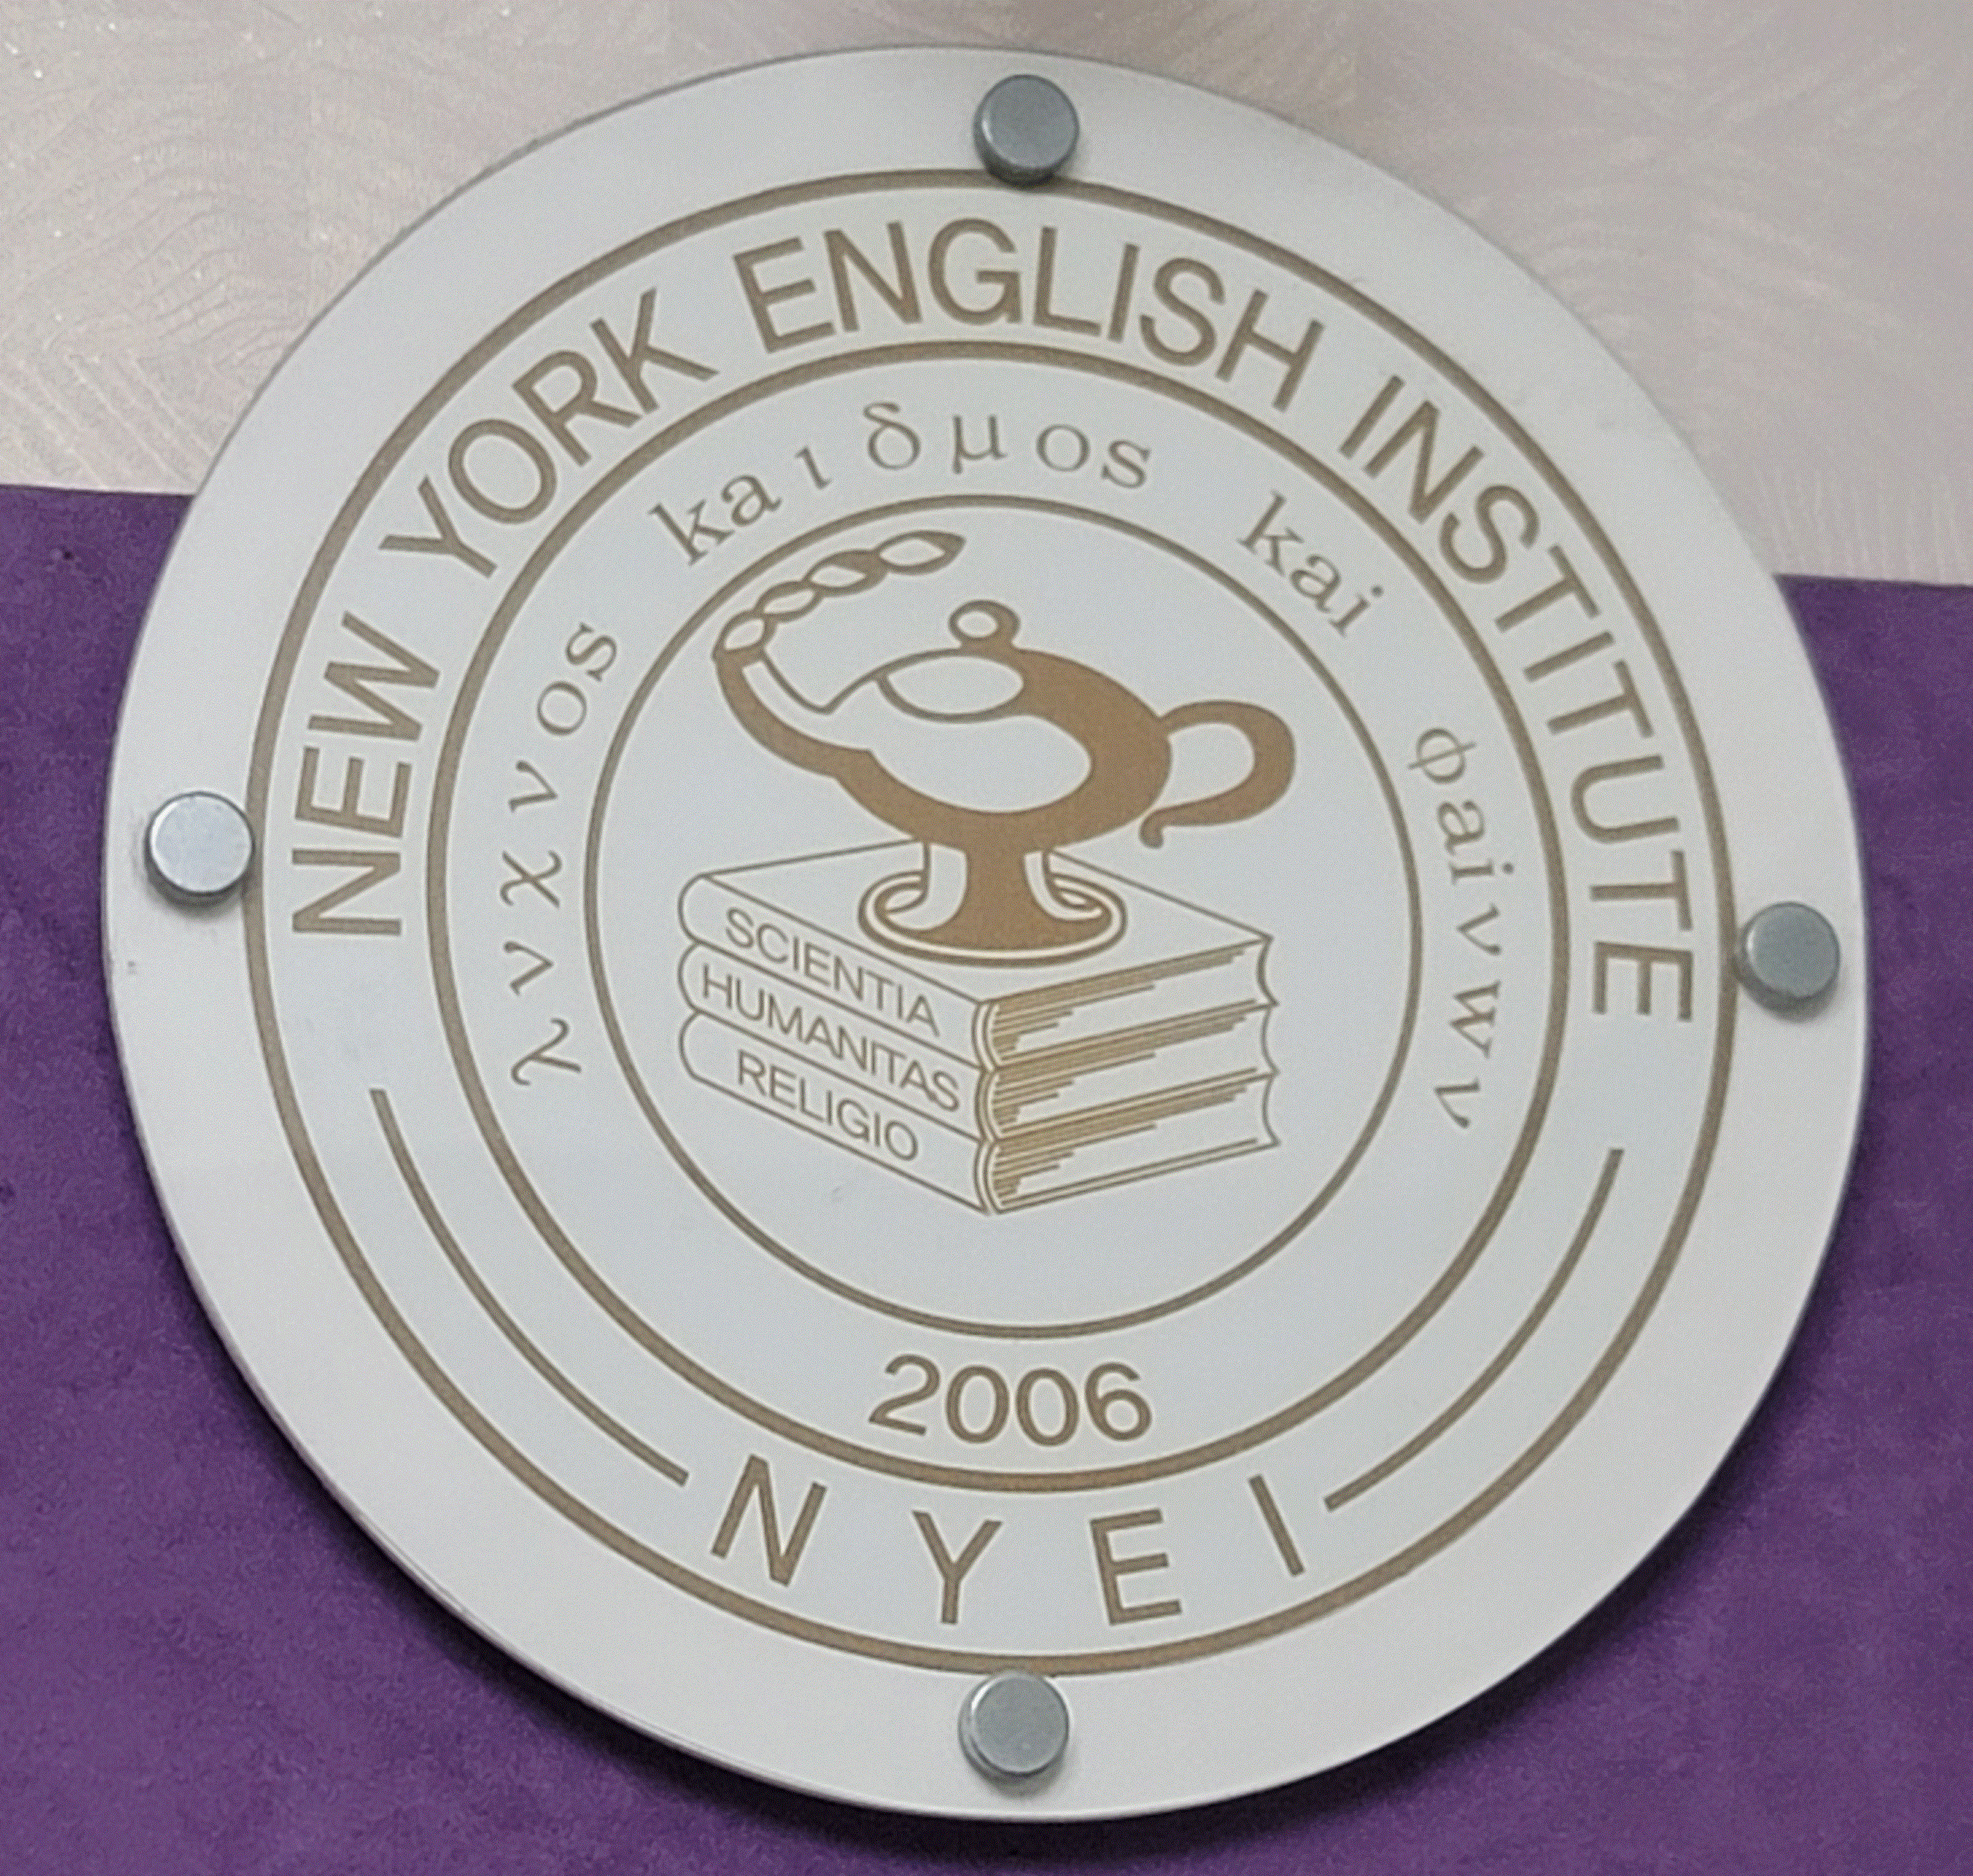 New York English Institute